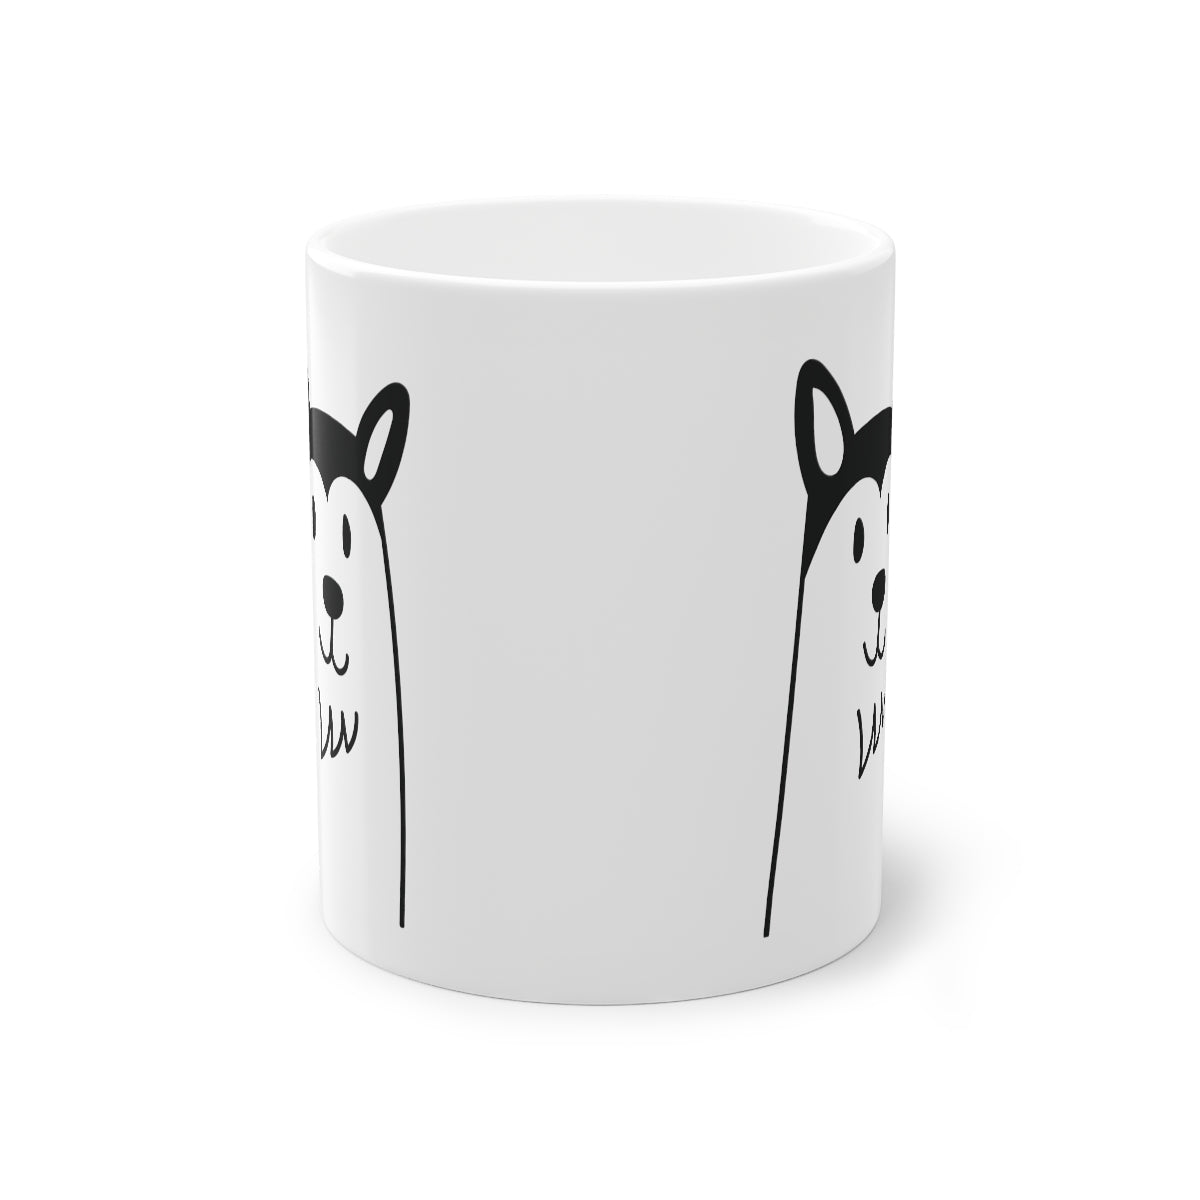 Mug mignon chien Husky, blanc, 325 ml / 11 oz Tasse à café, tasse à thé pour enfants, enfants, tasse de chiots pour les amoureux des chiens, propriétaires de chiens